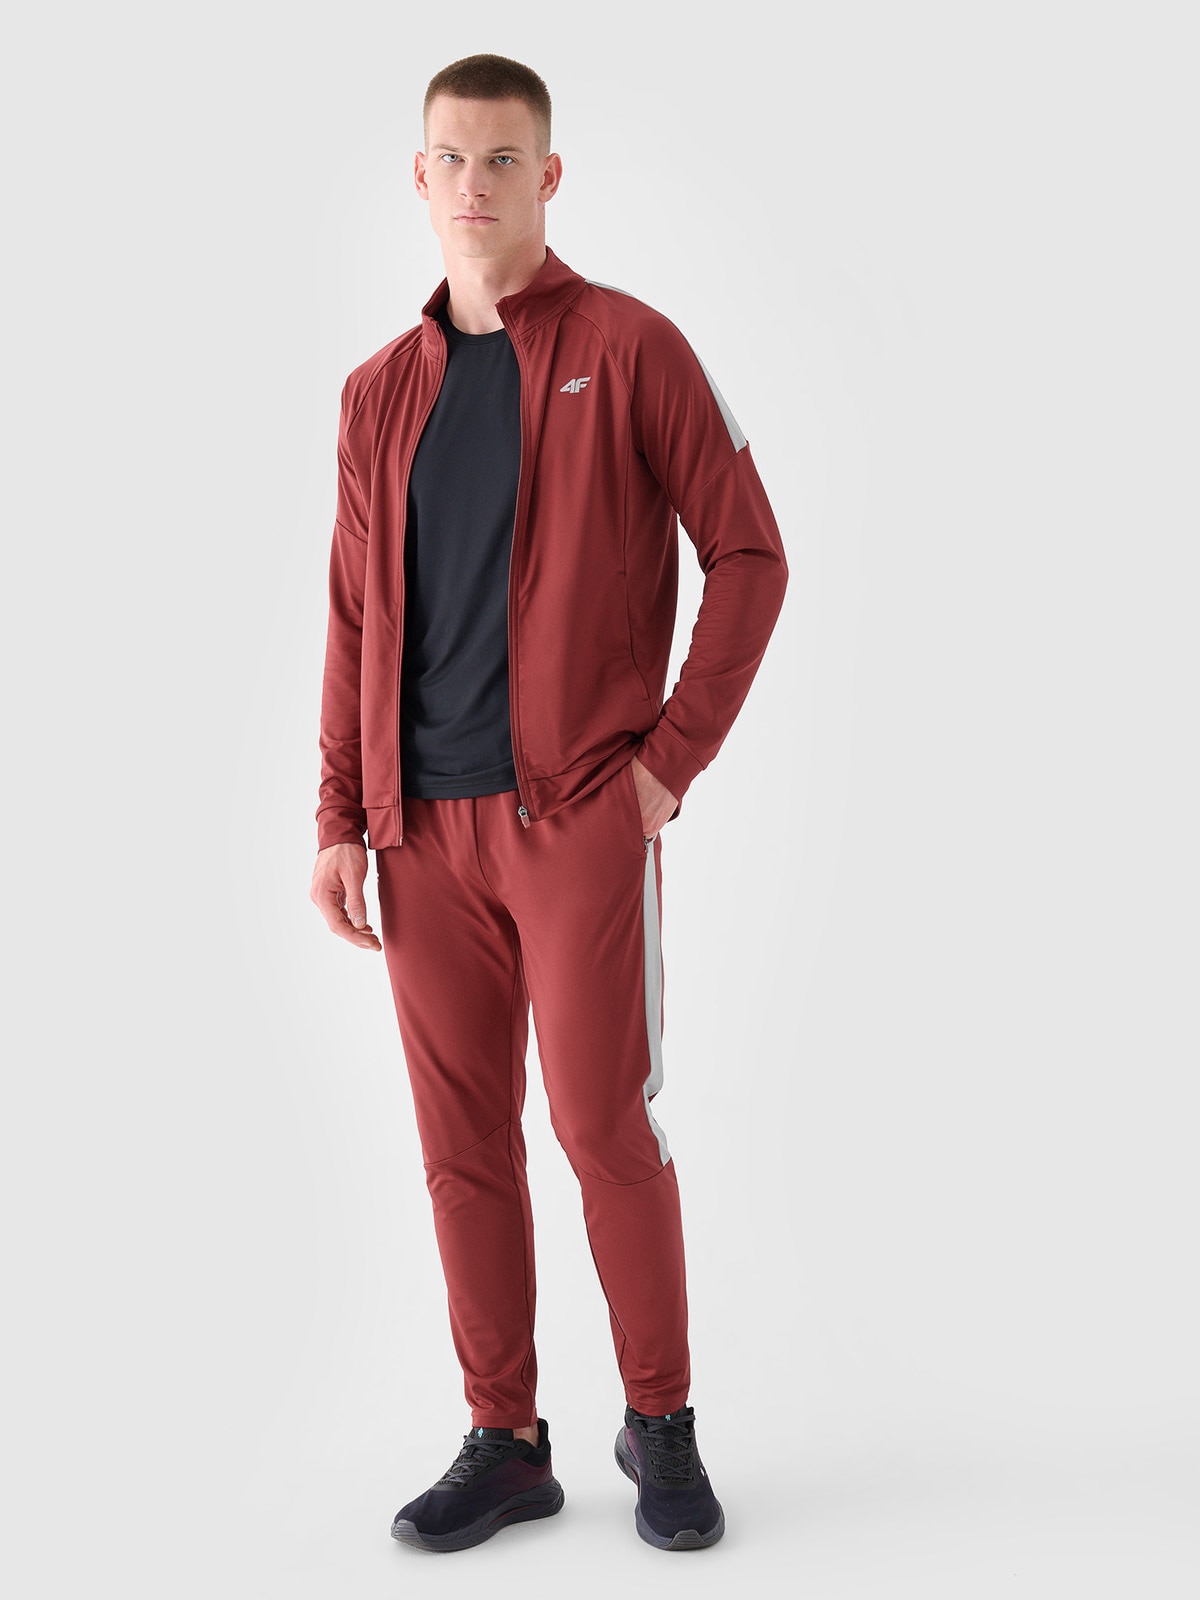 Pánské sportovní rychleschnoucí kalhoty - červené